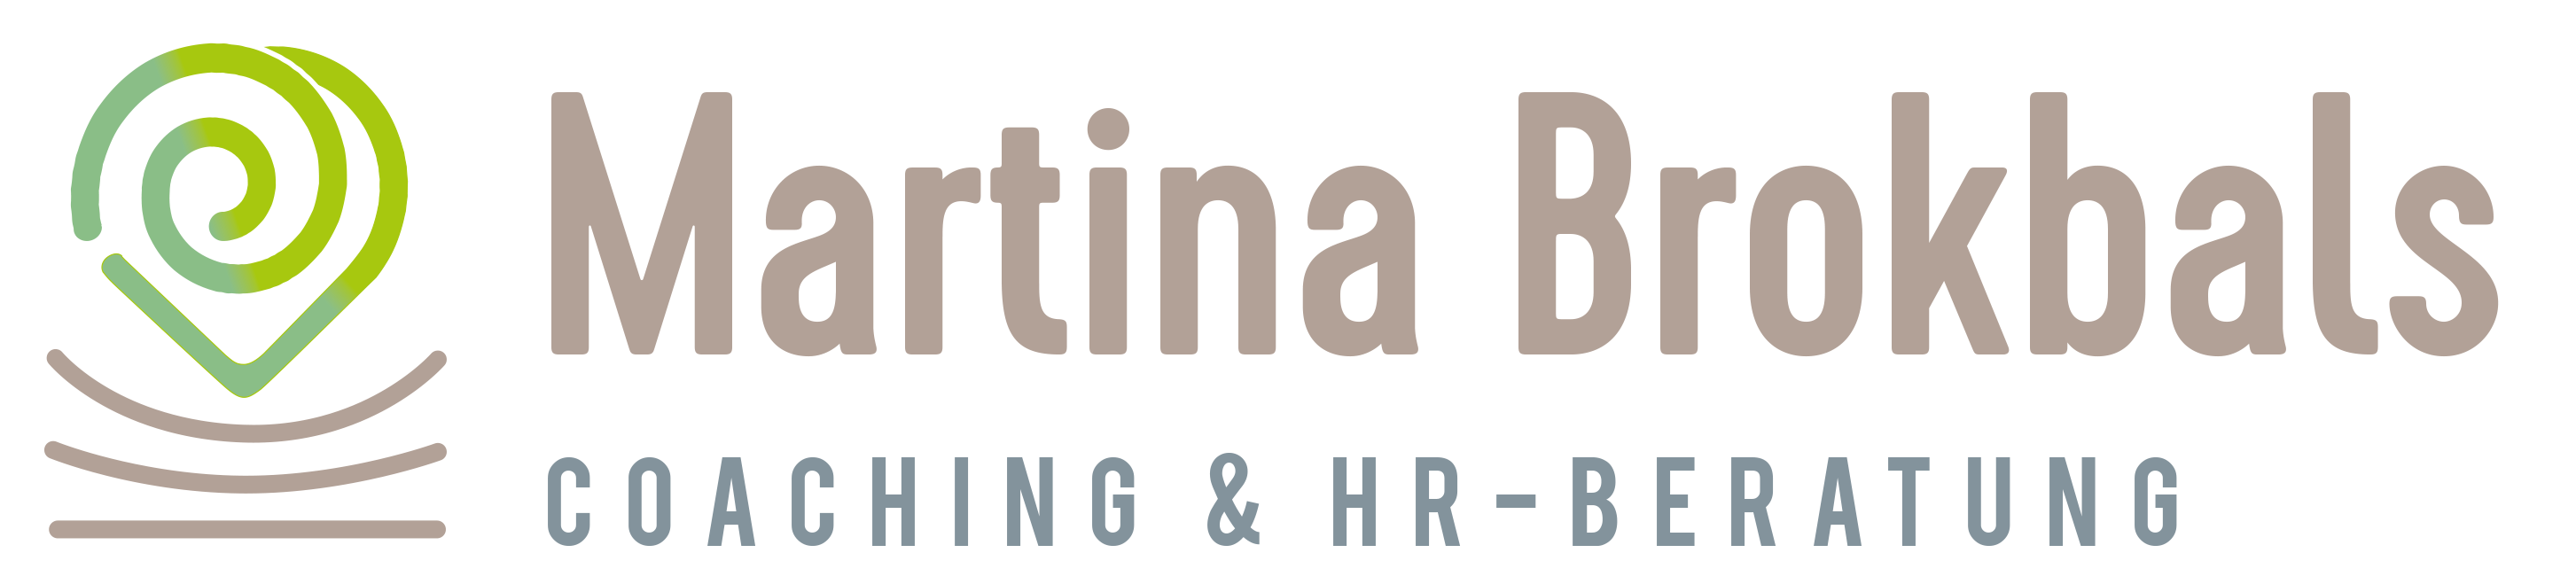 HR-Beratung & Coaching Logo